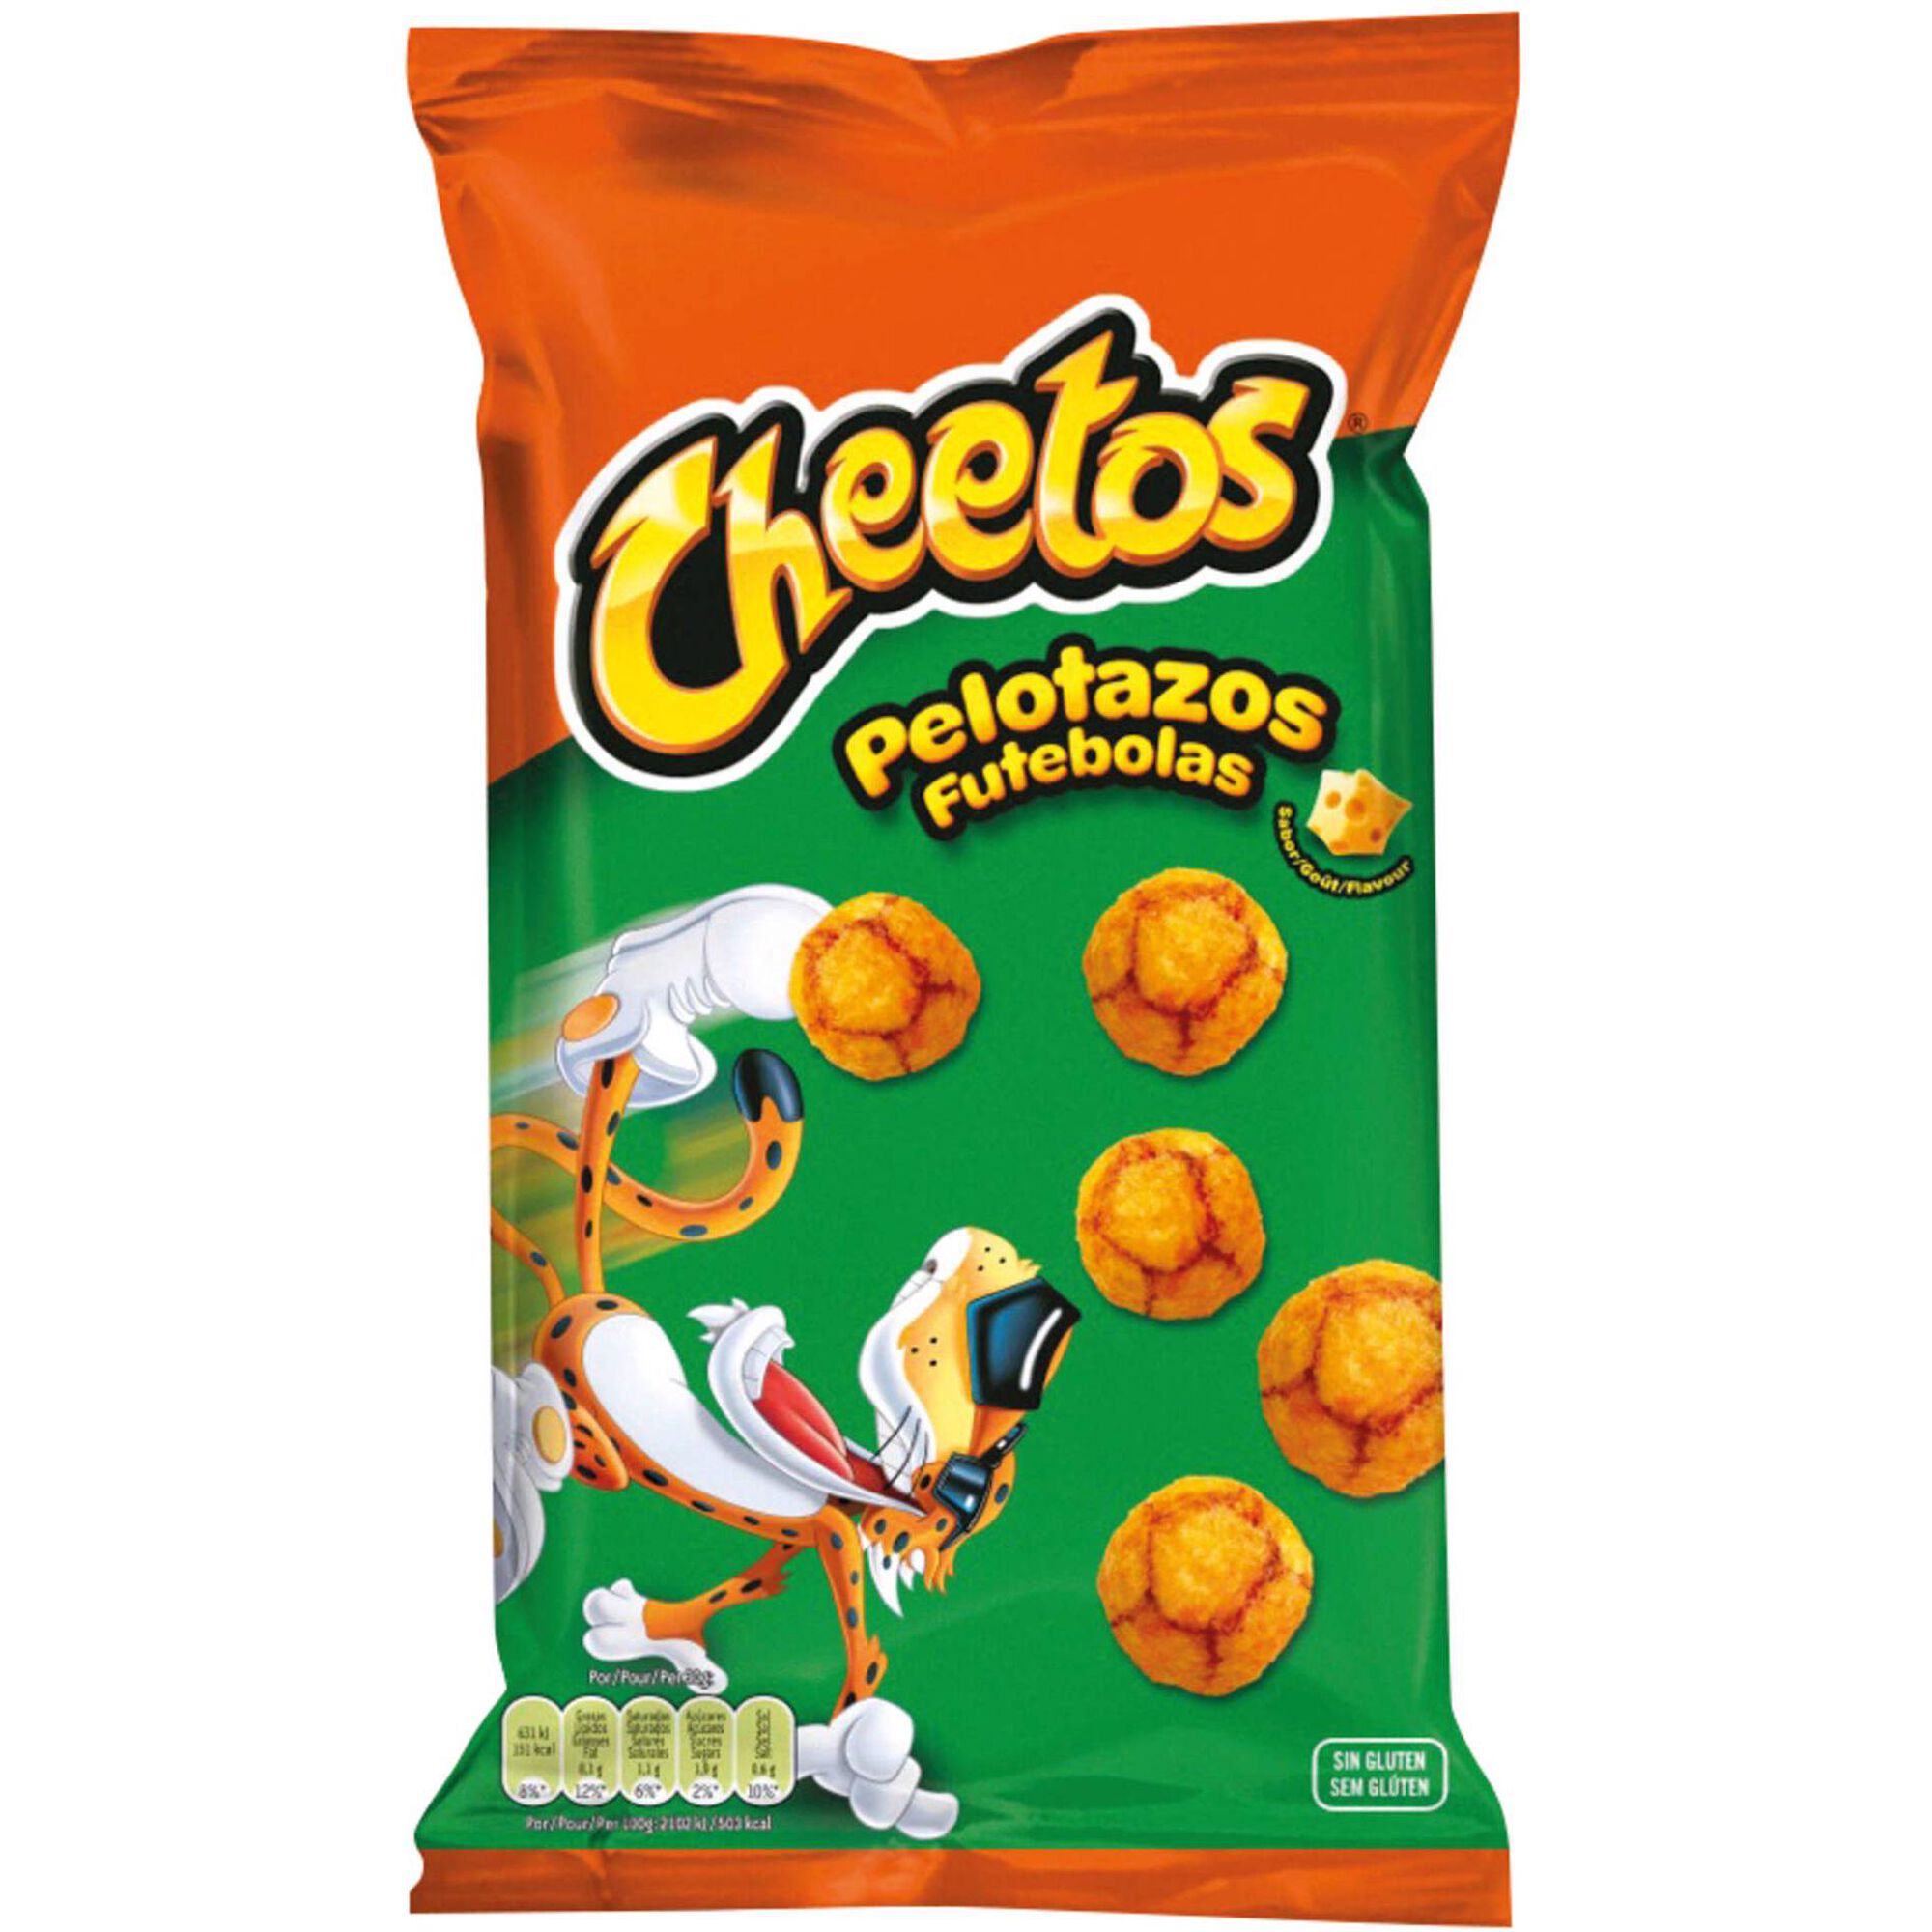 Cheetos Bola em Oferta